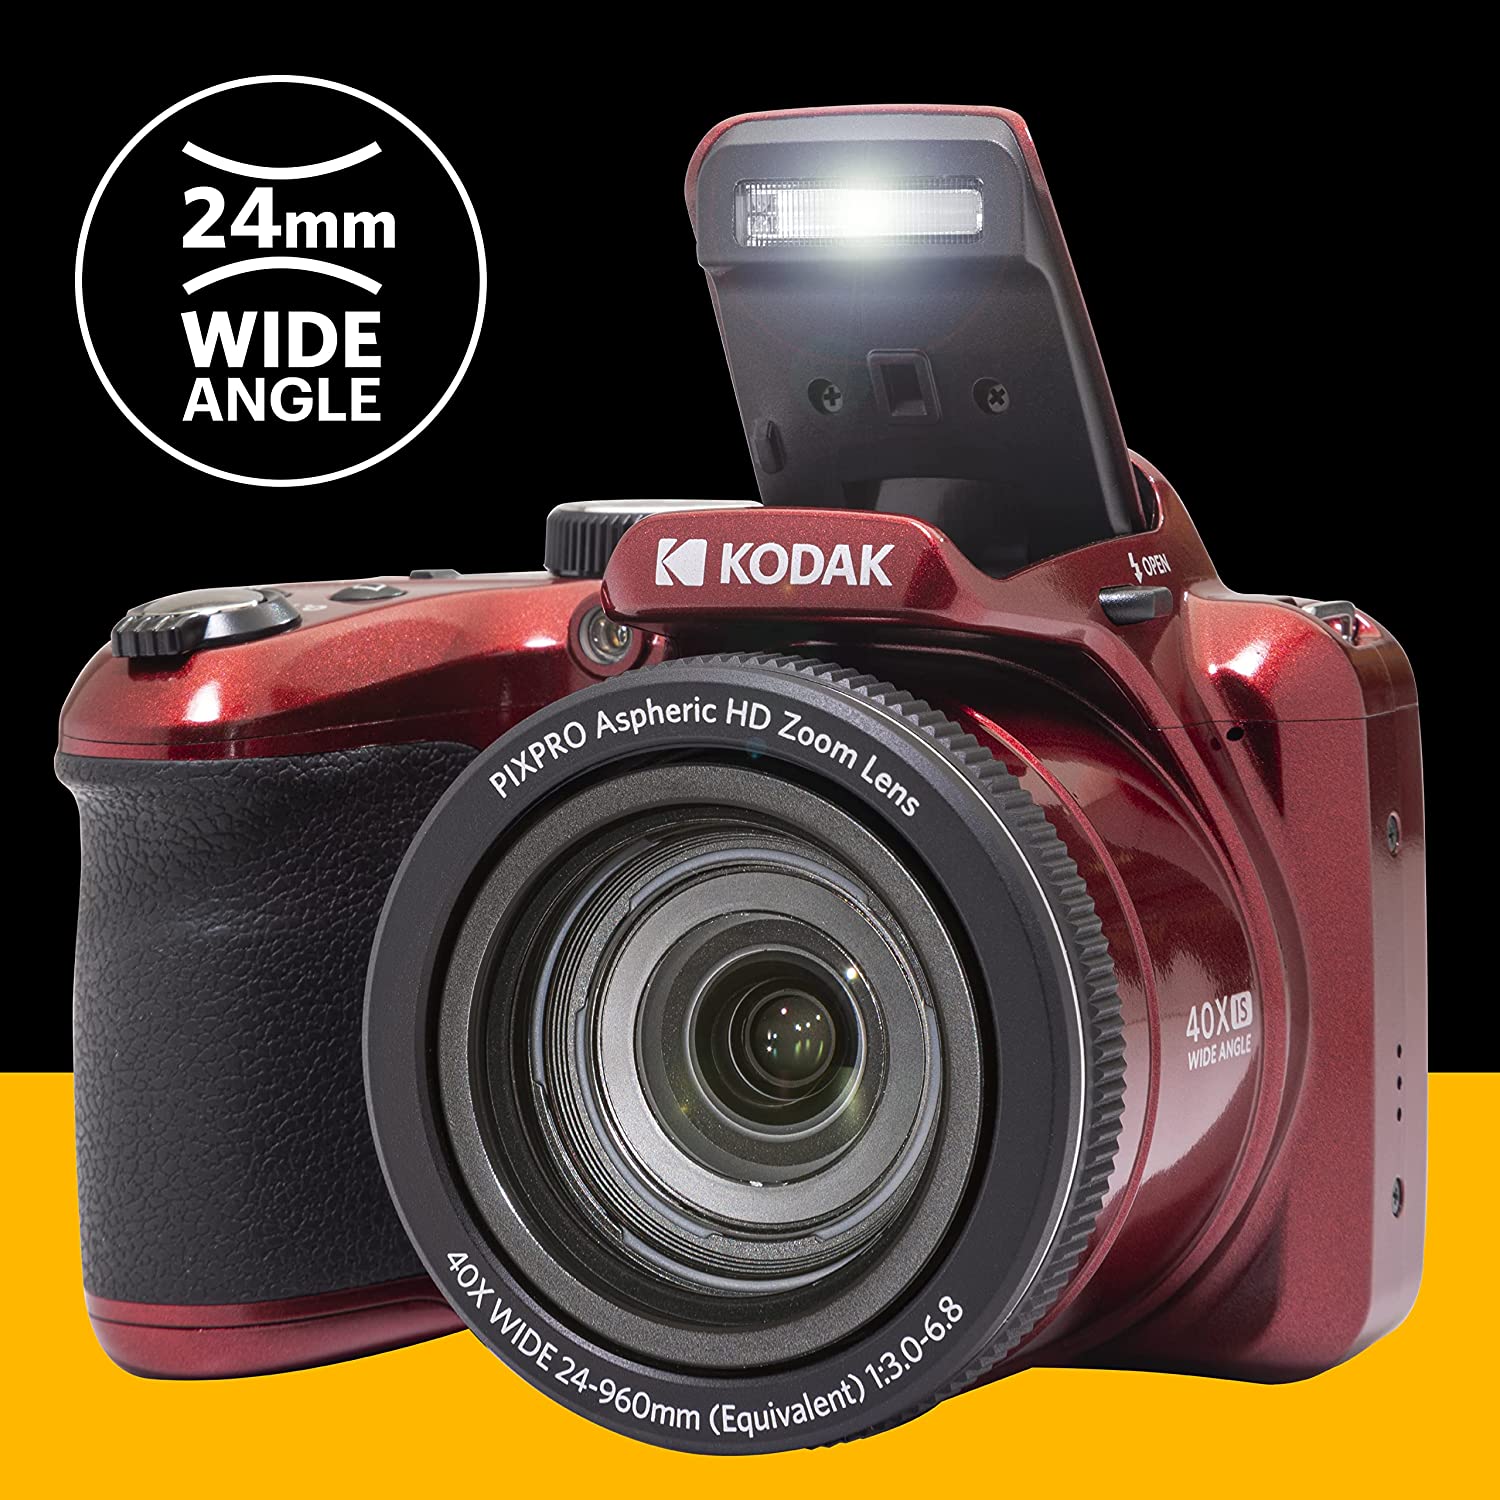 Kodak PIXPRO Astro Zoom AZ401 - digital camera - AZ401-BK - Cameras 